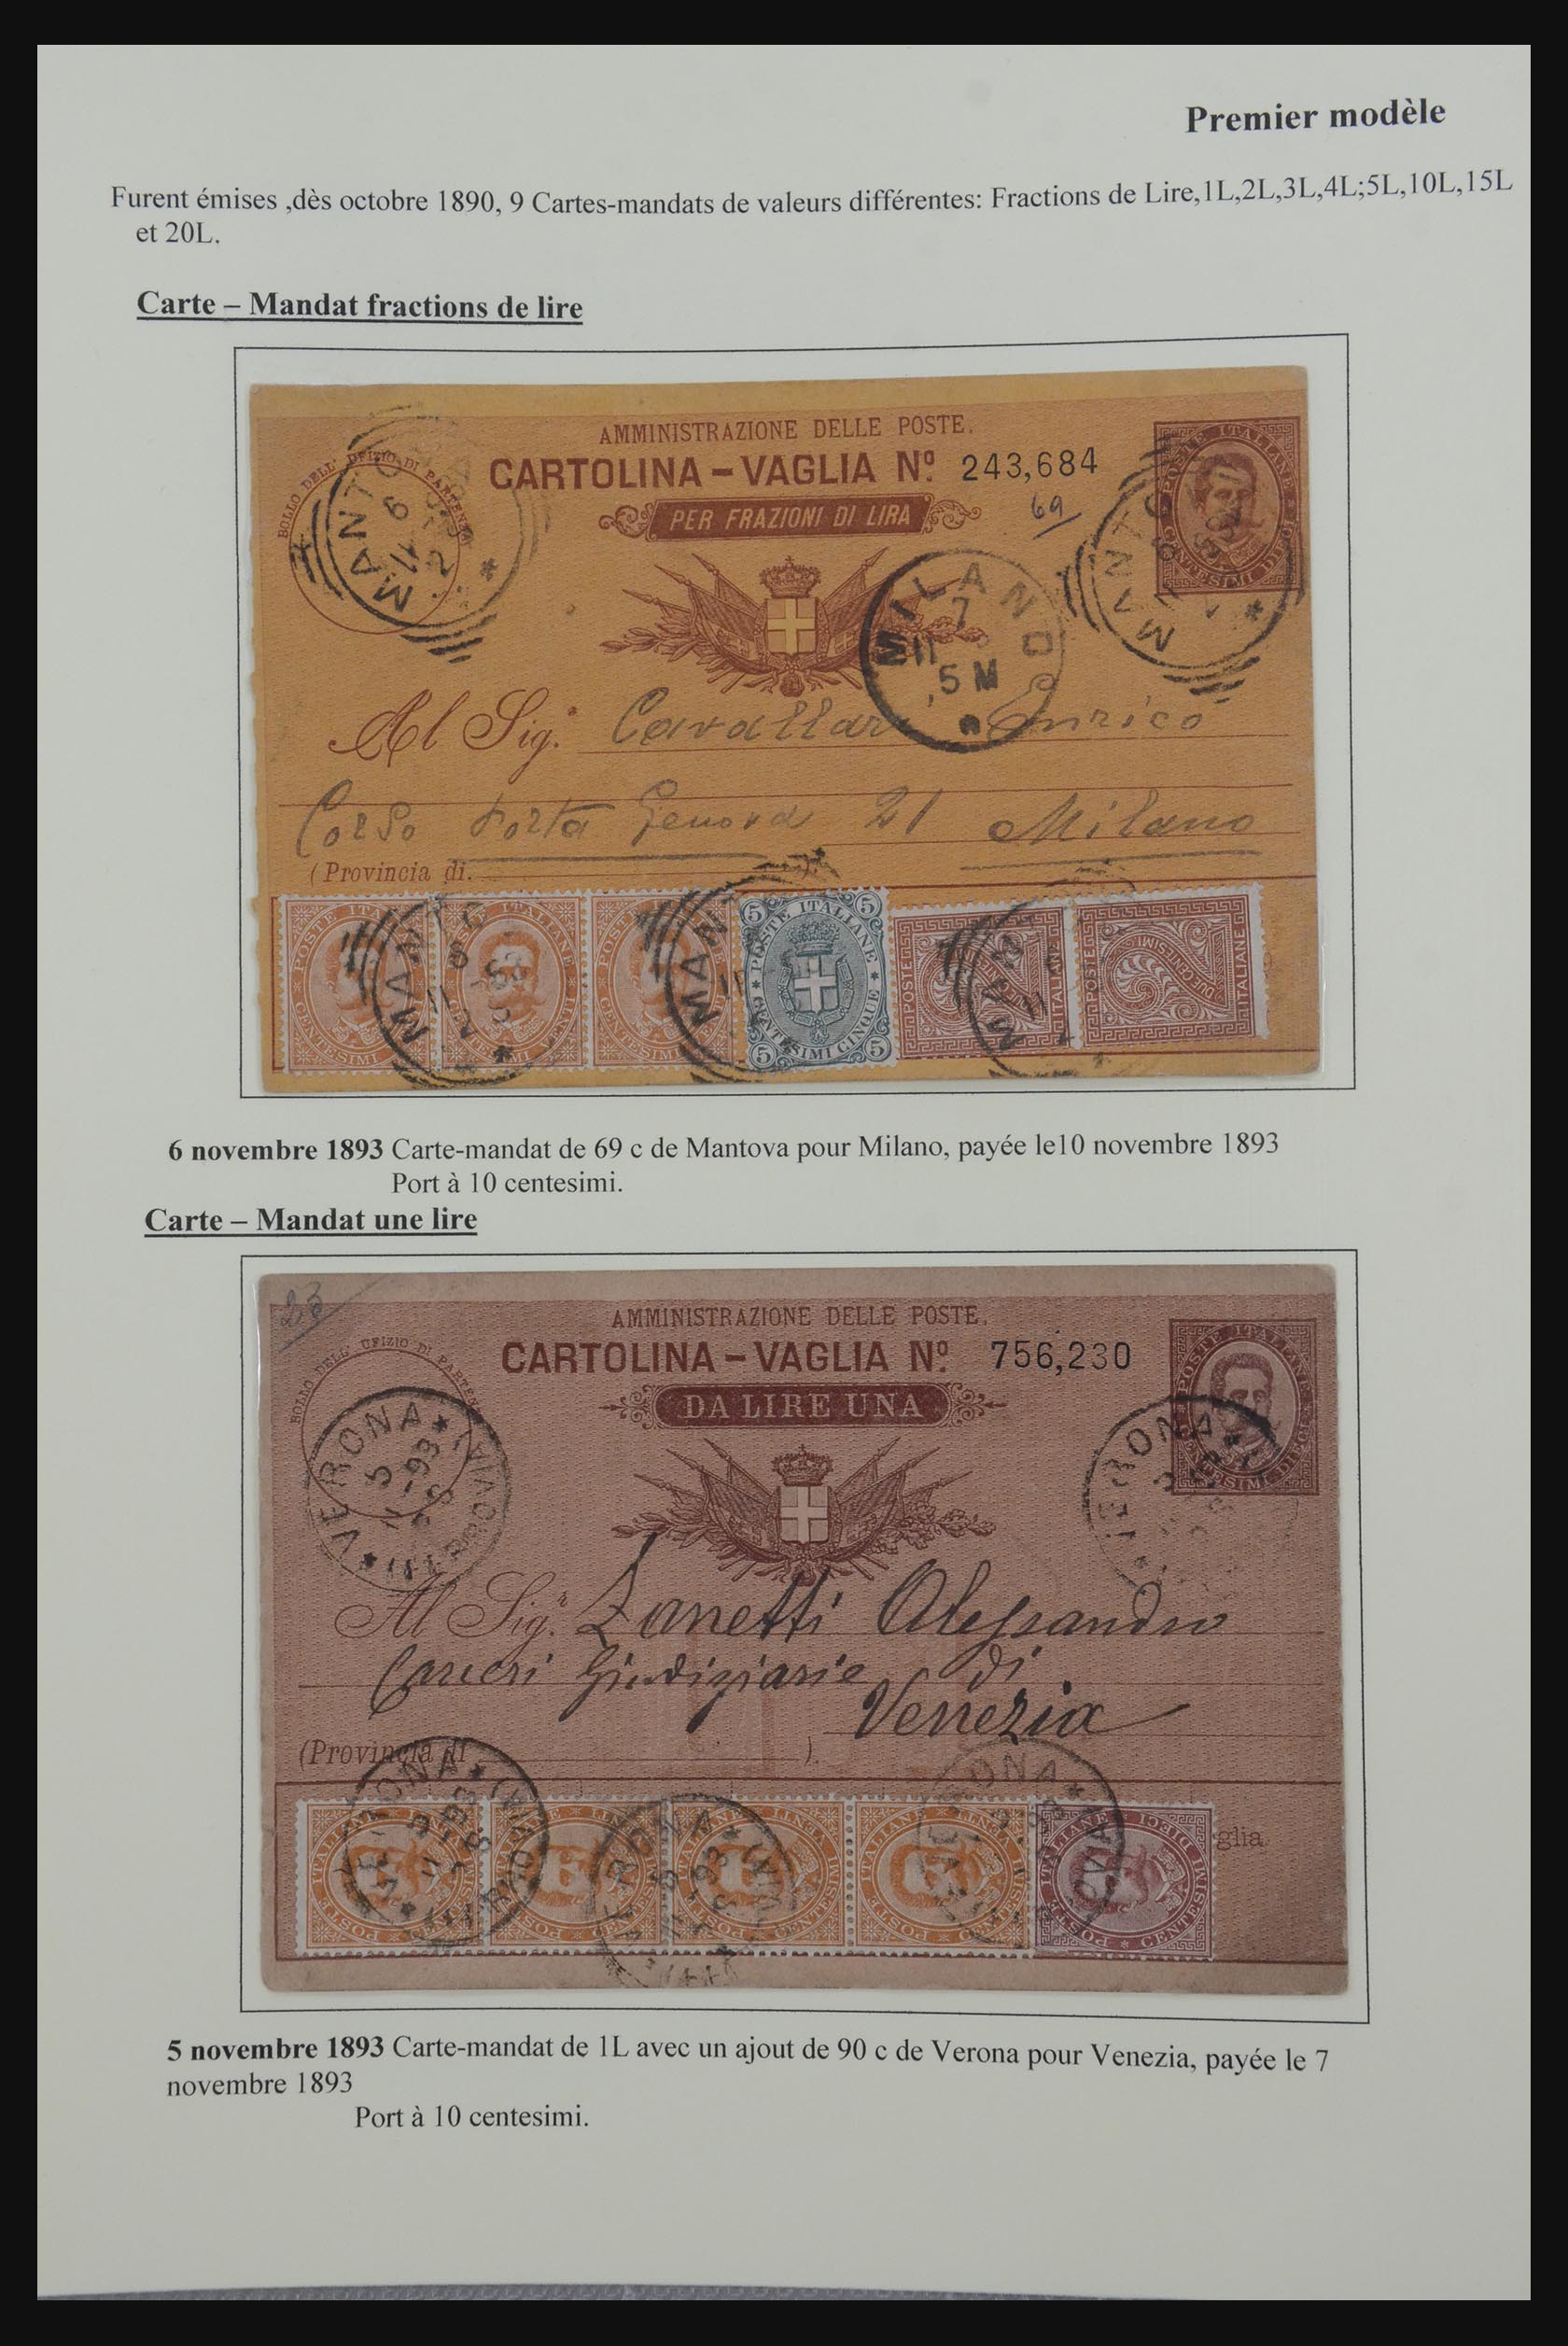 32243 003 - 32243 Italië postbewijskaarten 1892-1902.